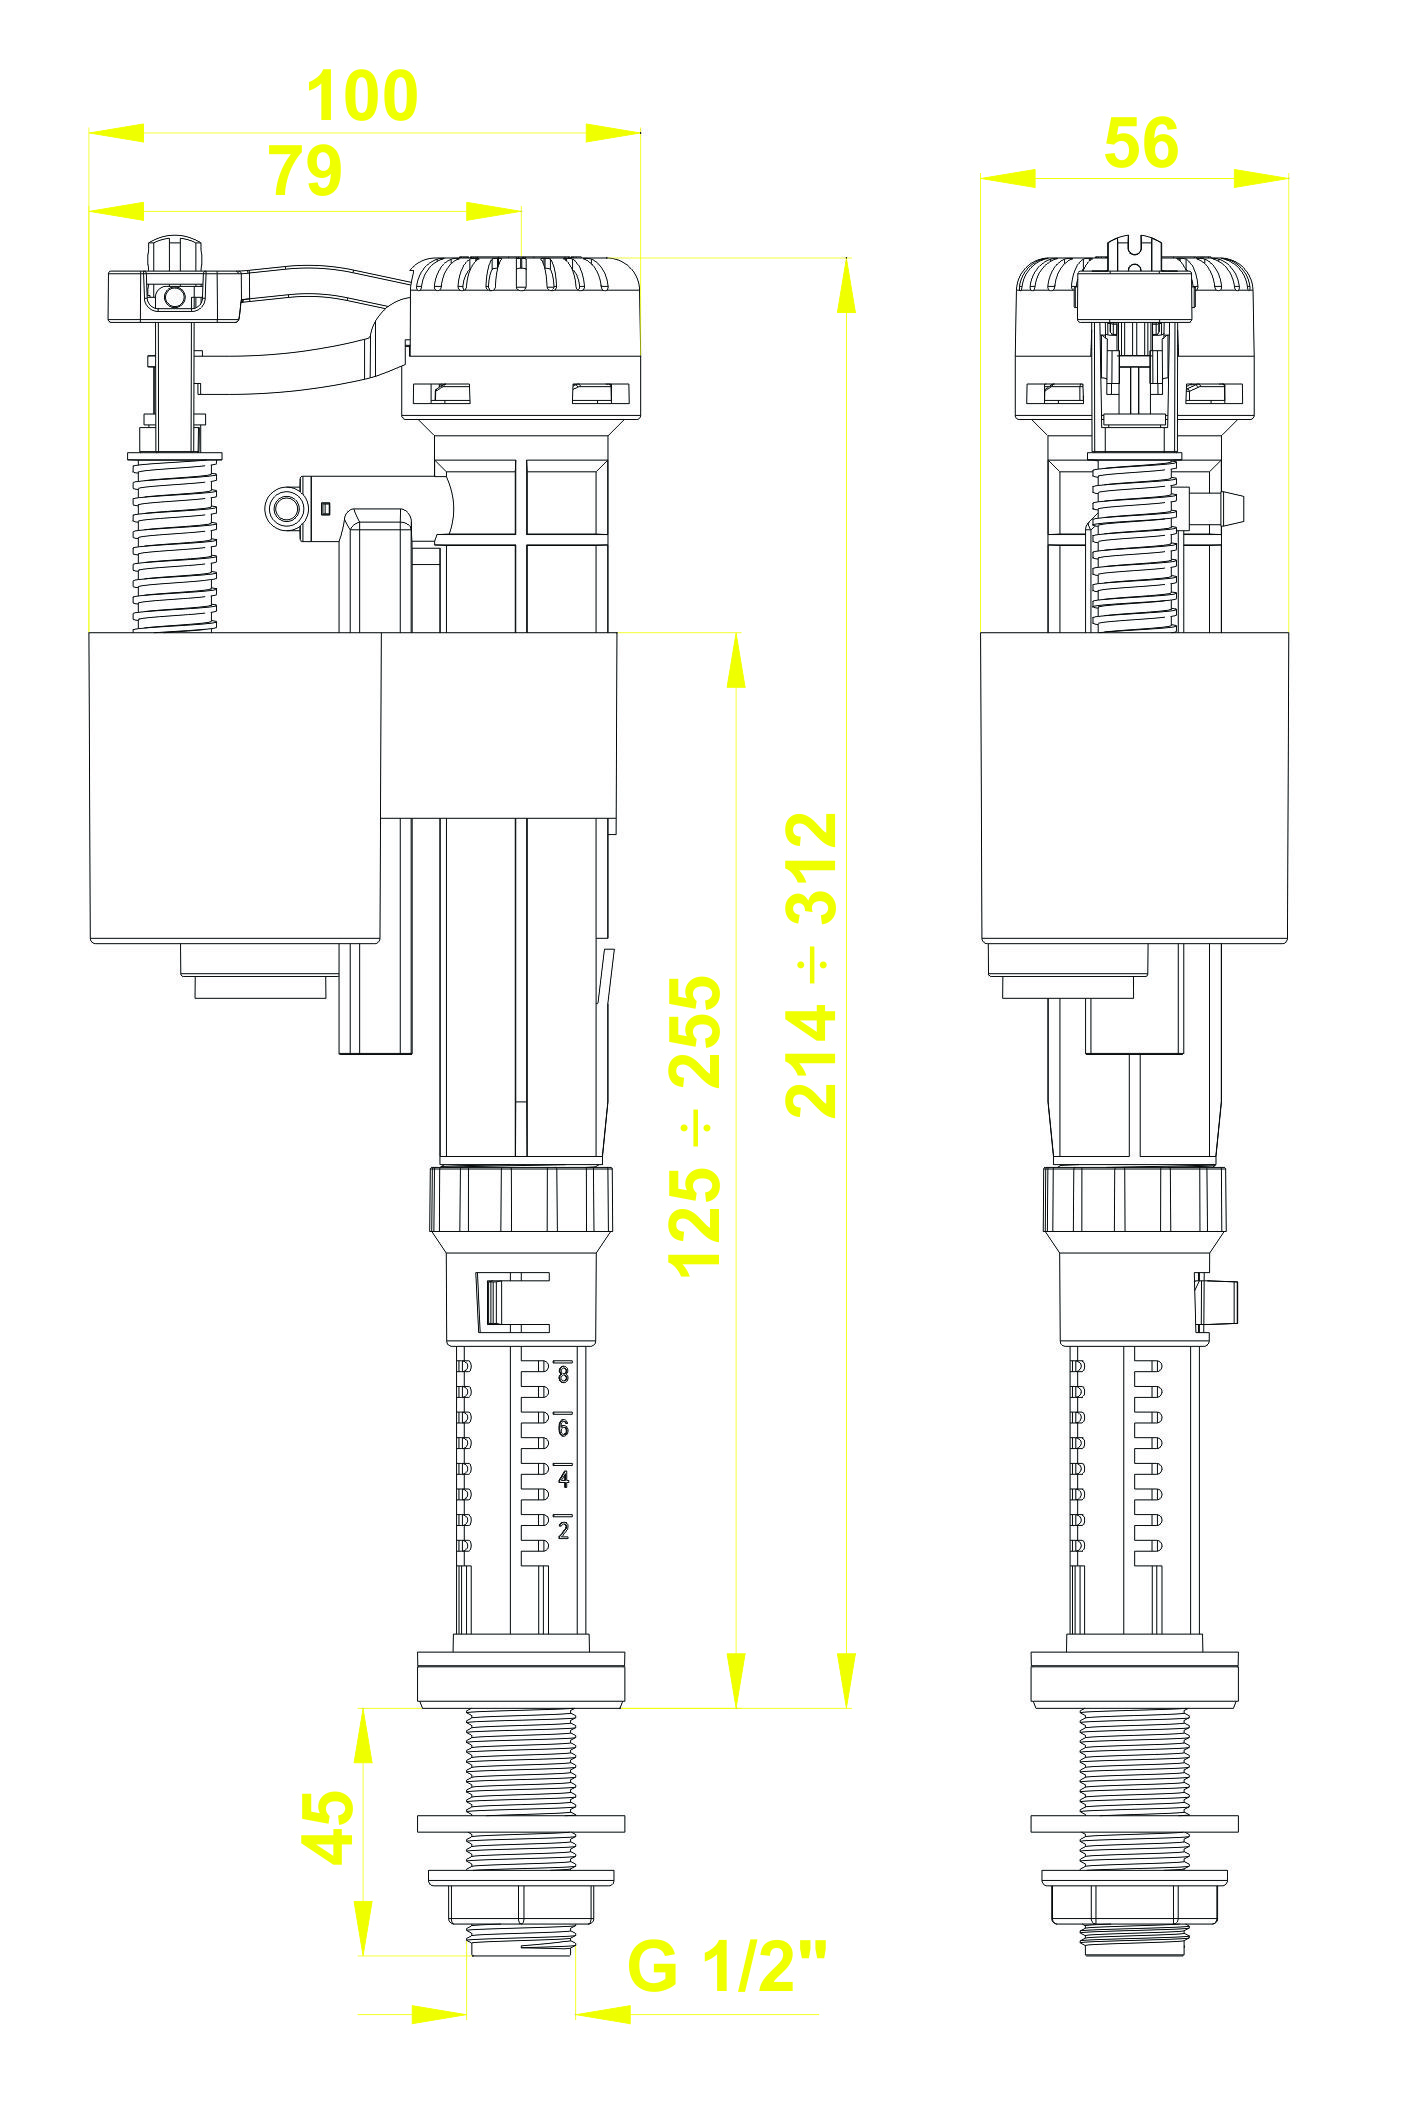 Bộ xả thùng nước dùng cho bồn cầu 1 khối (liền khối) VS2208-Smart round 3 win 2 nút nhấn (được lựa chọn 1 trong 07 nút nhấn) cột xả cao cố định 150mm